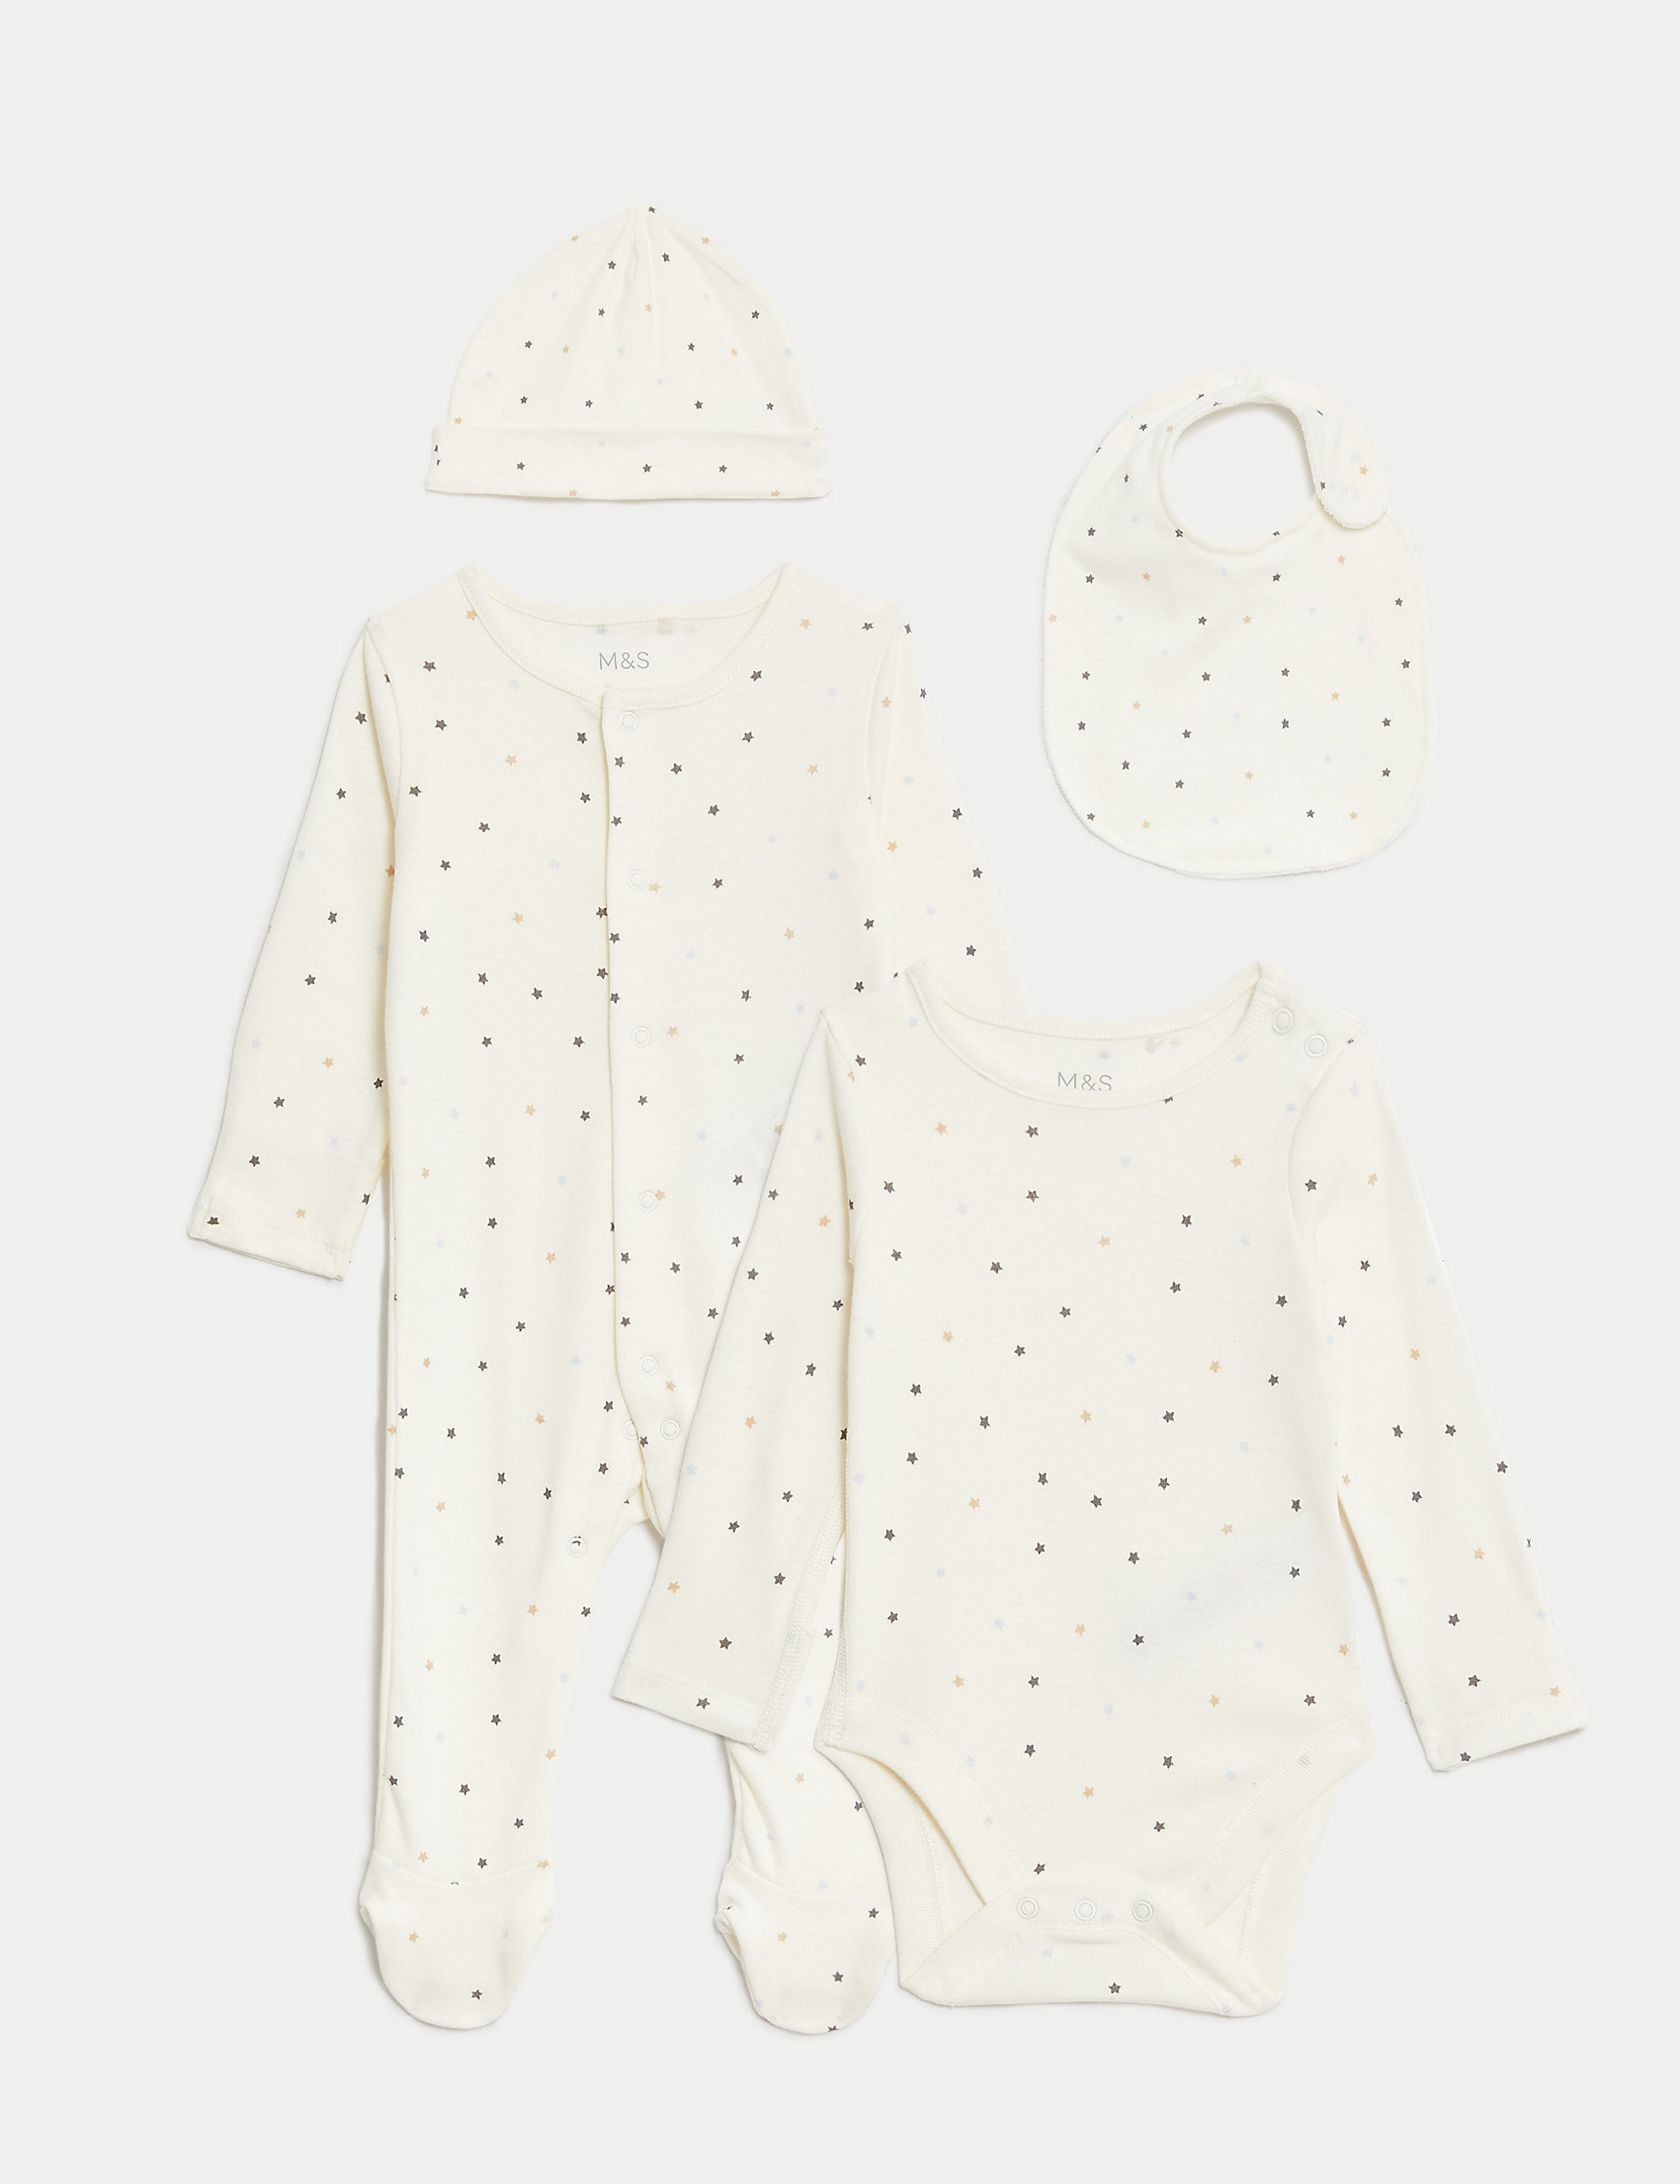 Стартовый набор со звездами из чистого хлопка, 4 предмета (0–1 год) Marks & Spencer, белый микс